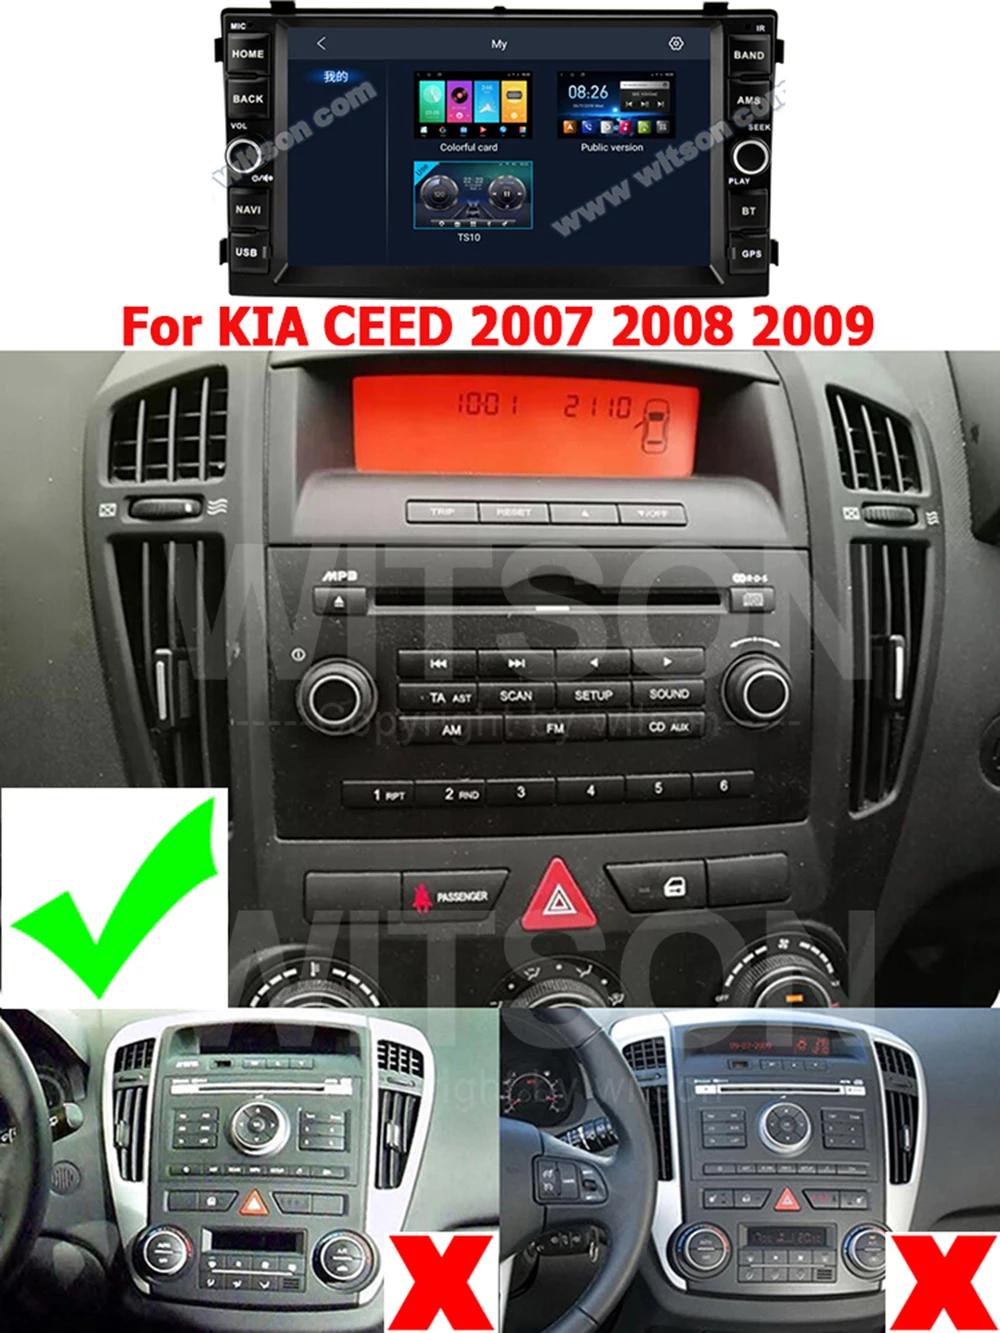 radio nawigacja kia ceed 2007 - Jak ustawic zegar w Kia Ceed 2007